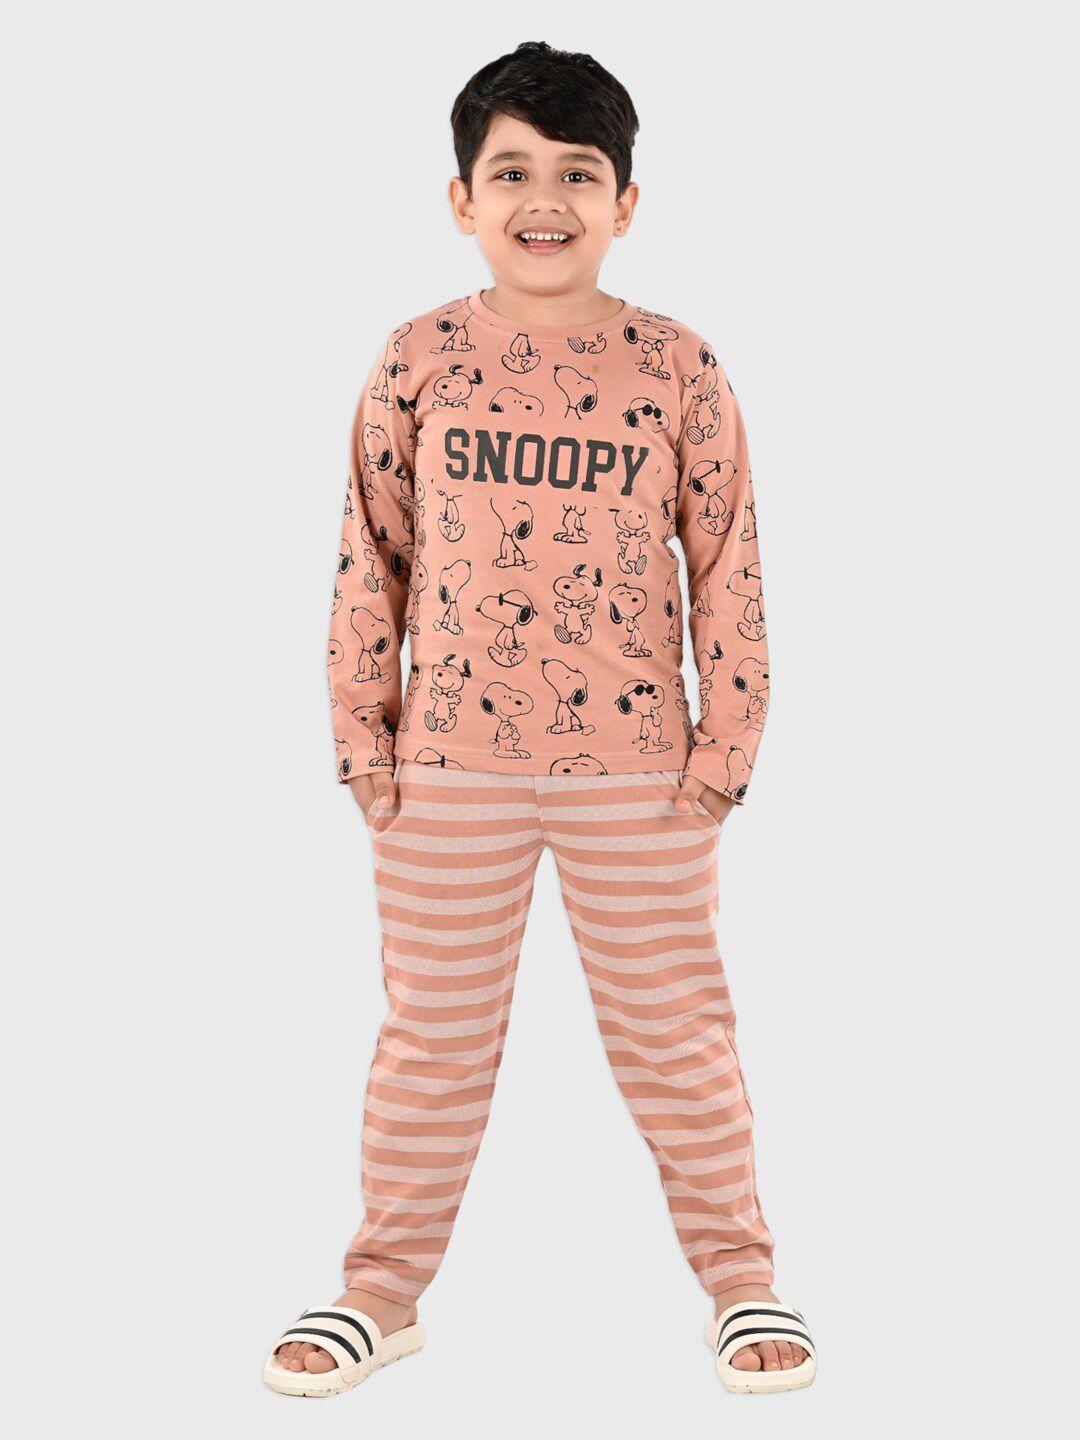 denikid-kids-snoopy-printed-pure-cotton-t-shirt-with-pyjamas